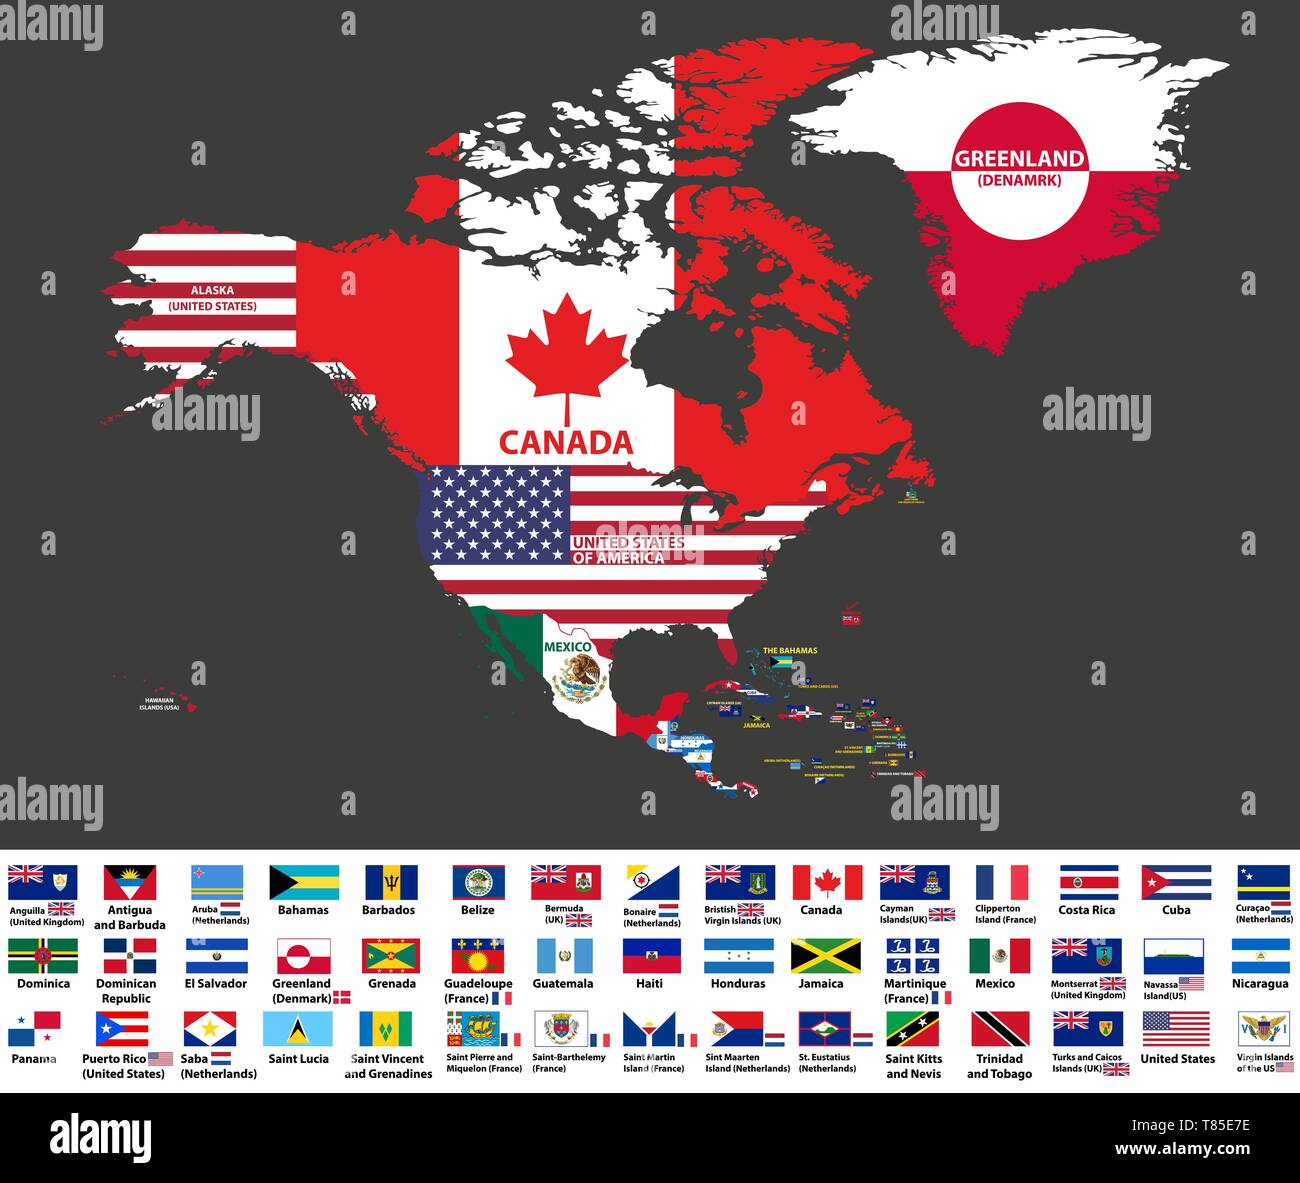 Ilustración vectorial del mapa de América del Norte (incluye América del Norte, América Central y el Caribe) con los nombres de países y banderas de países Ilustración del Vector